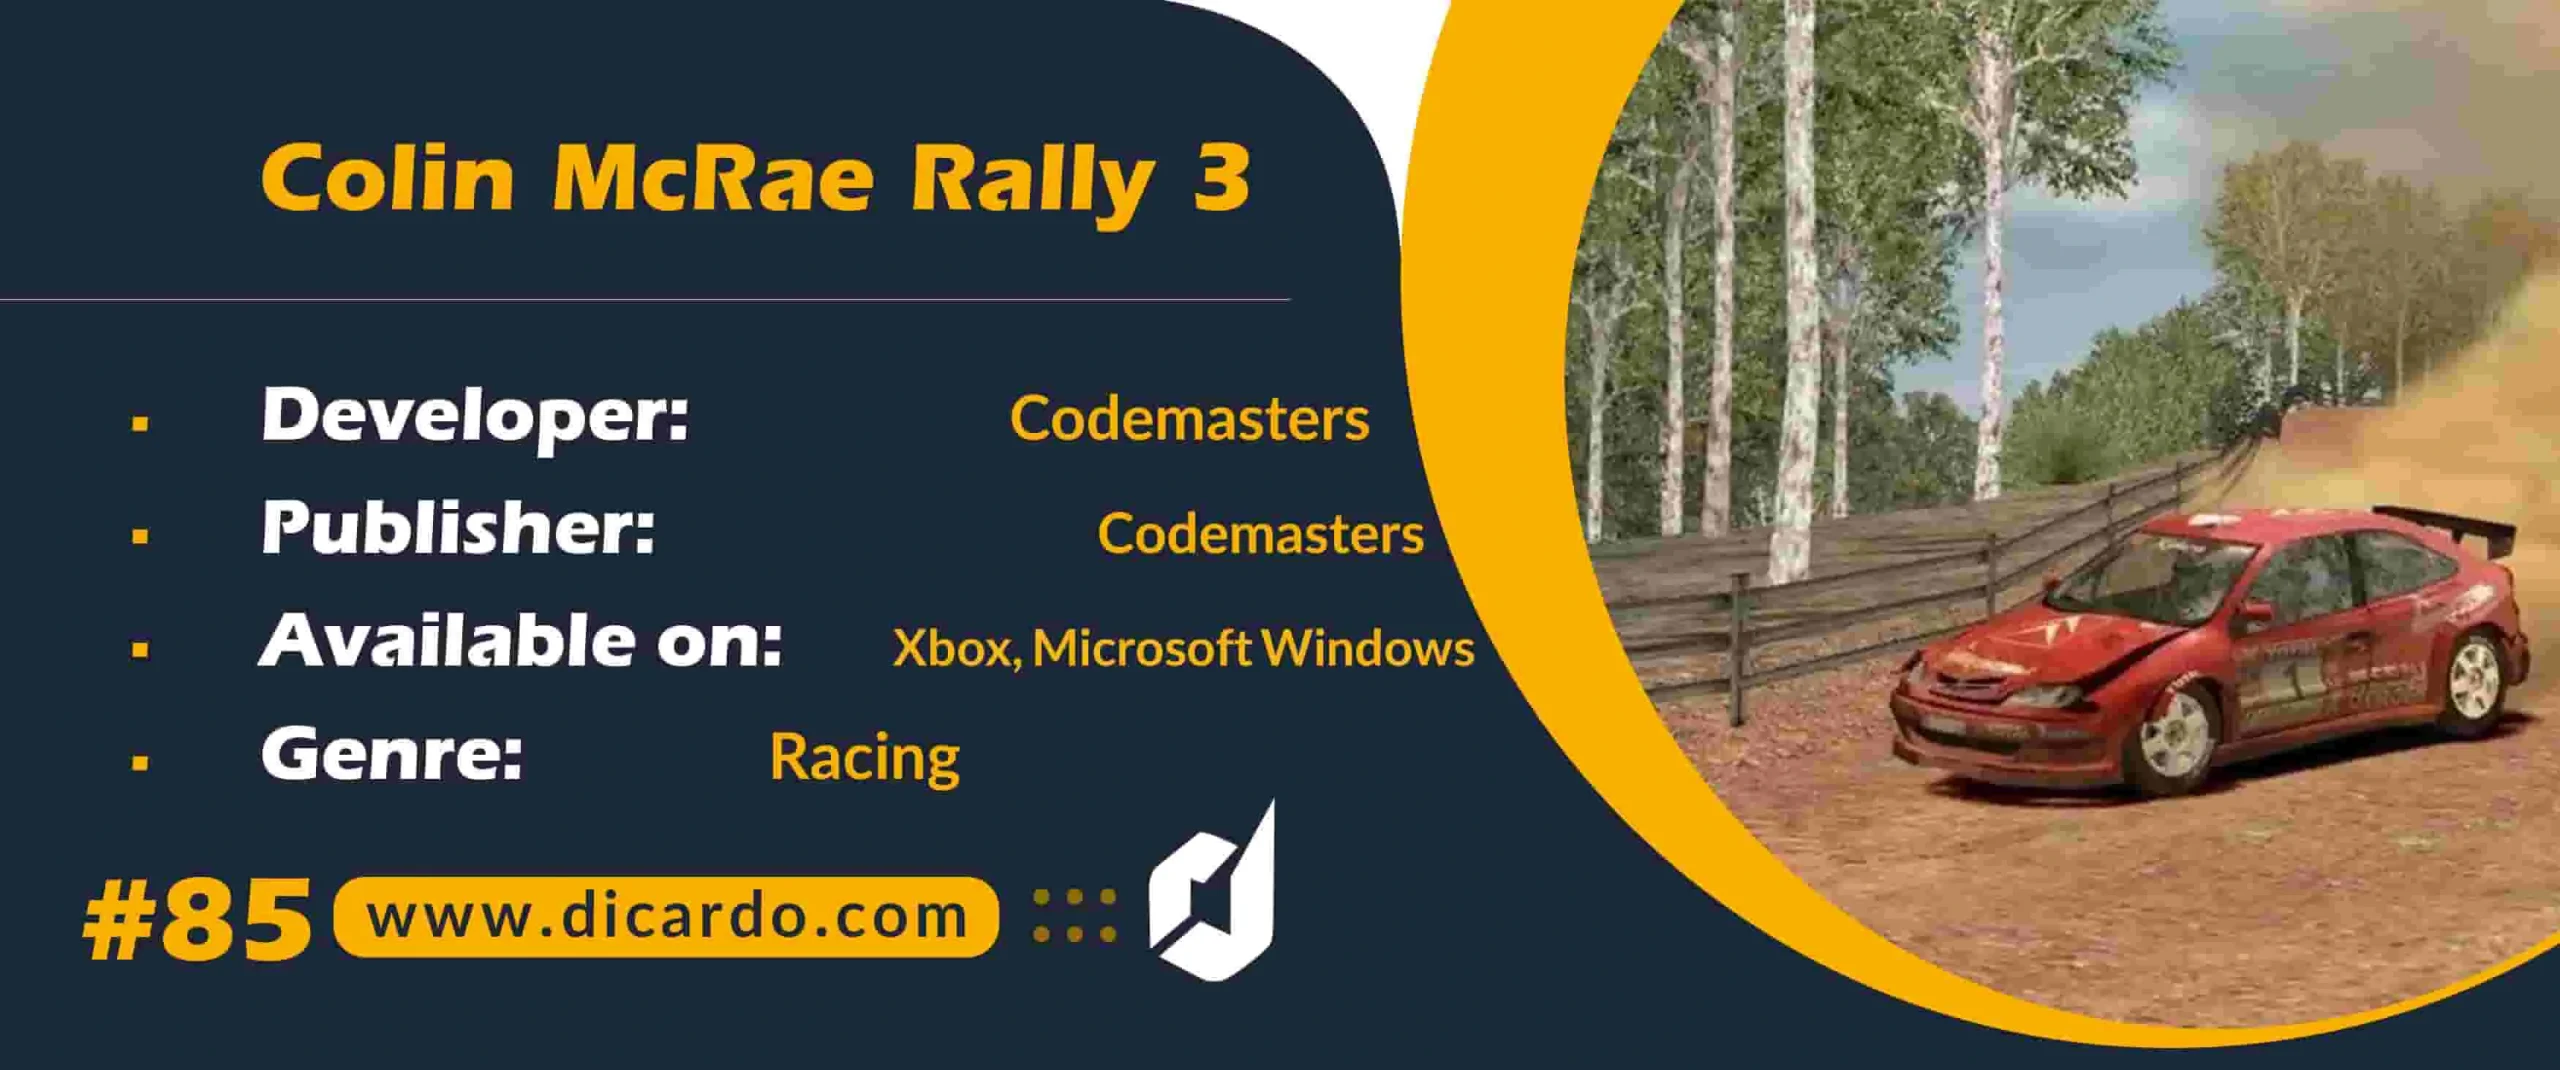 #85 کالین مکرای رالی 3 Colin McRae Rally 3